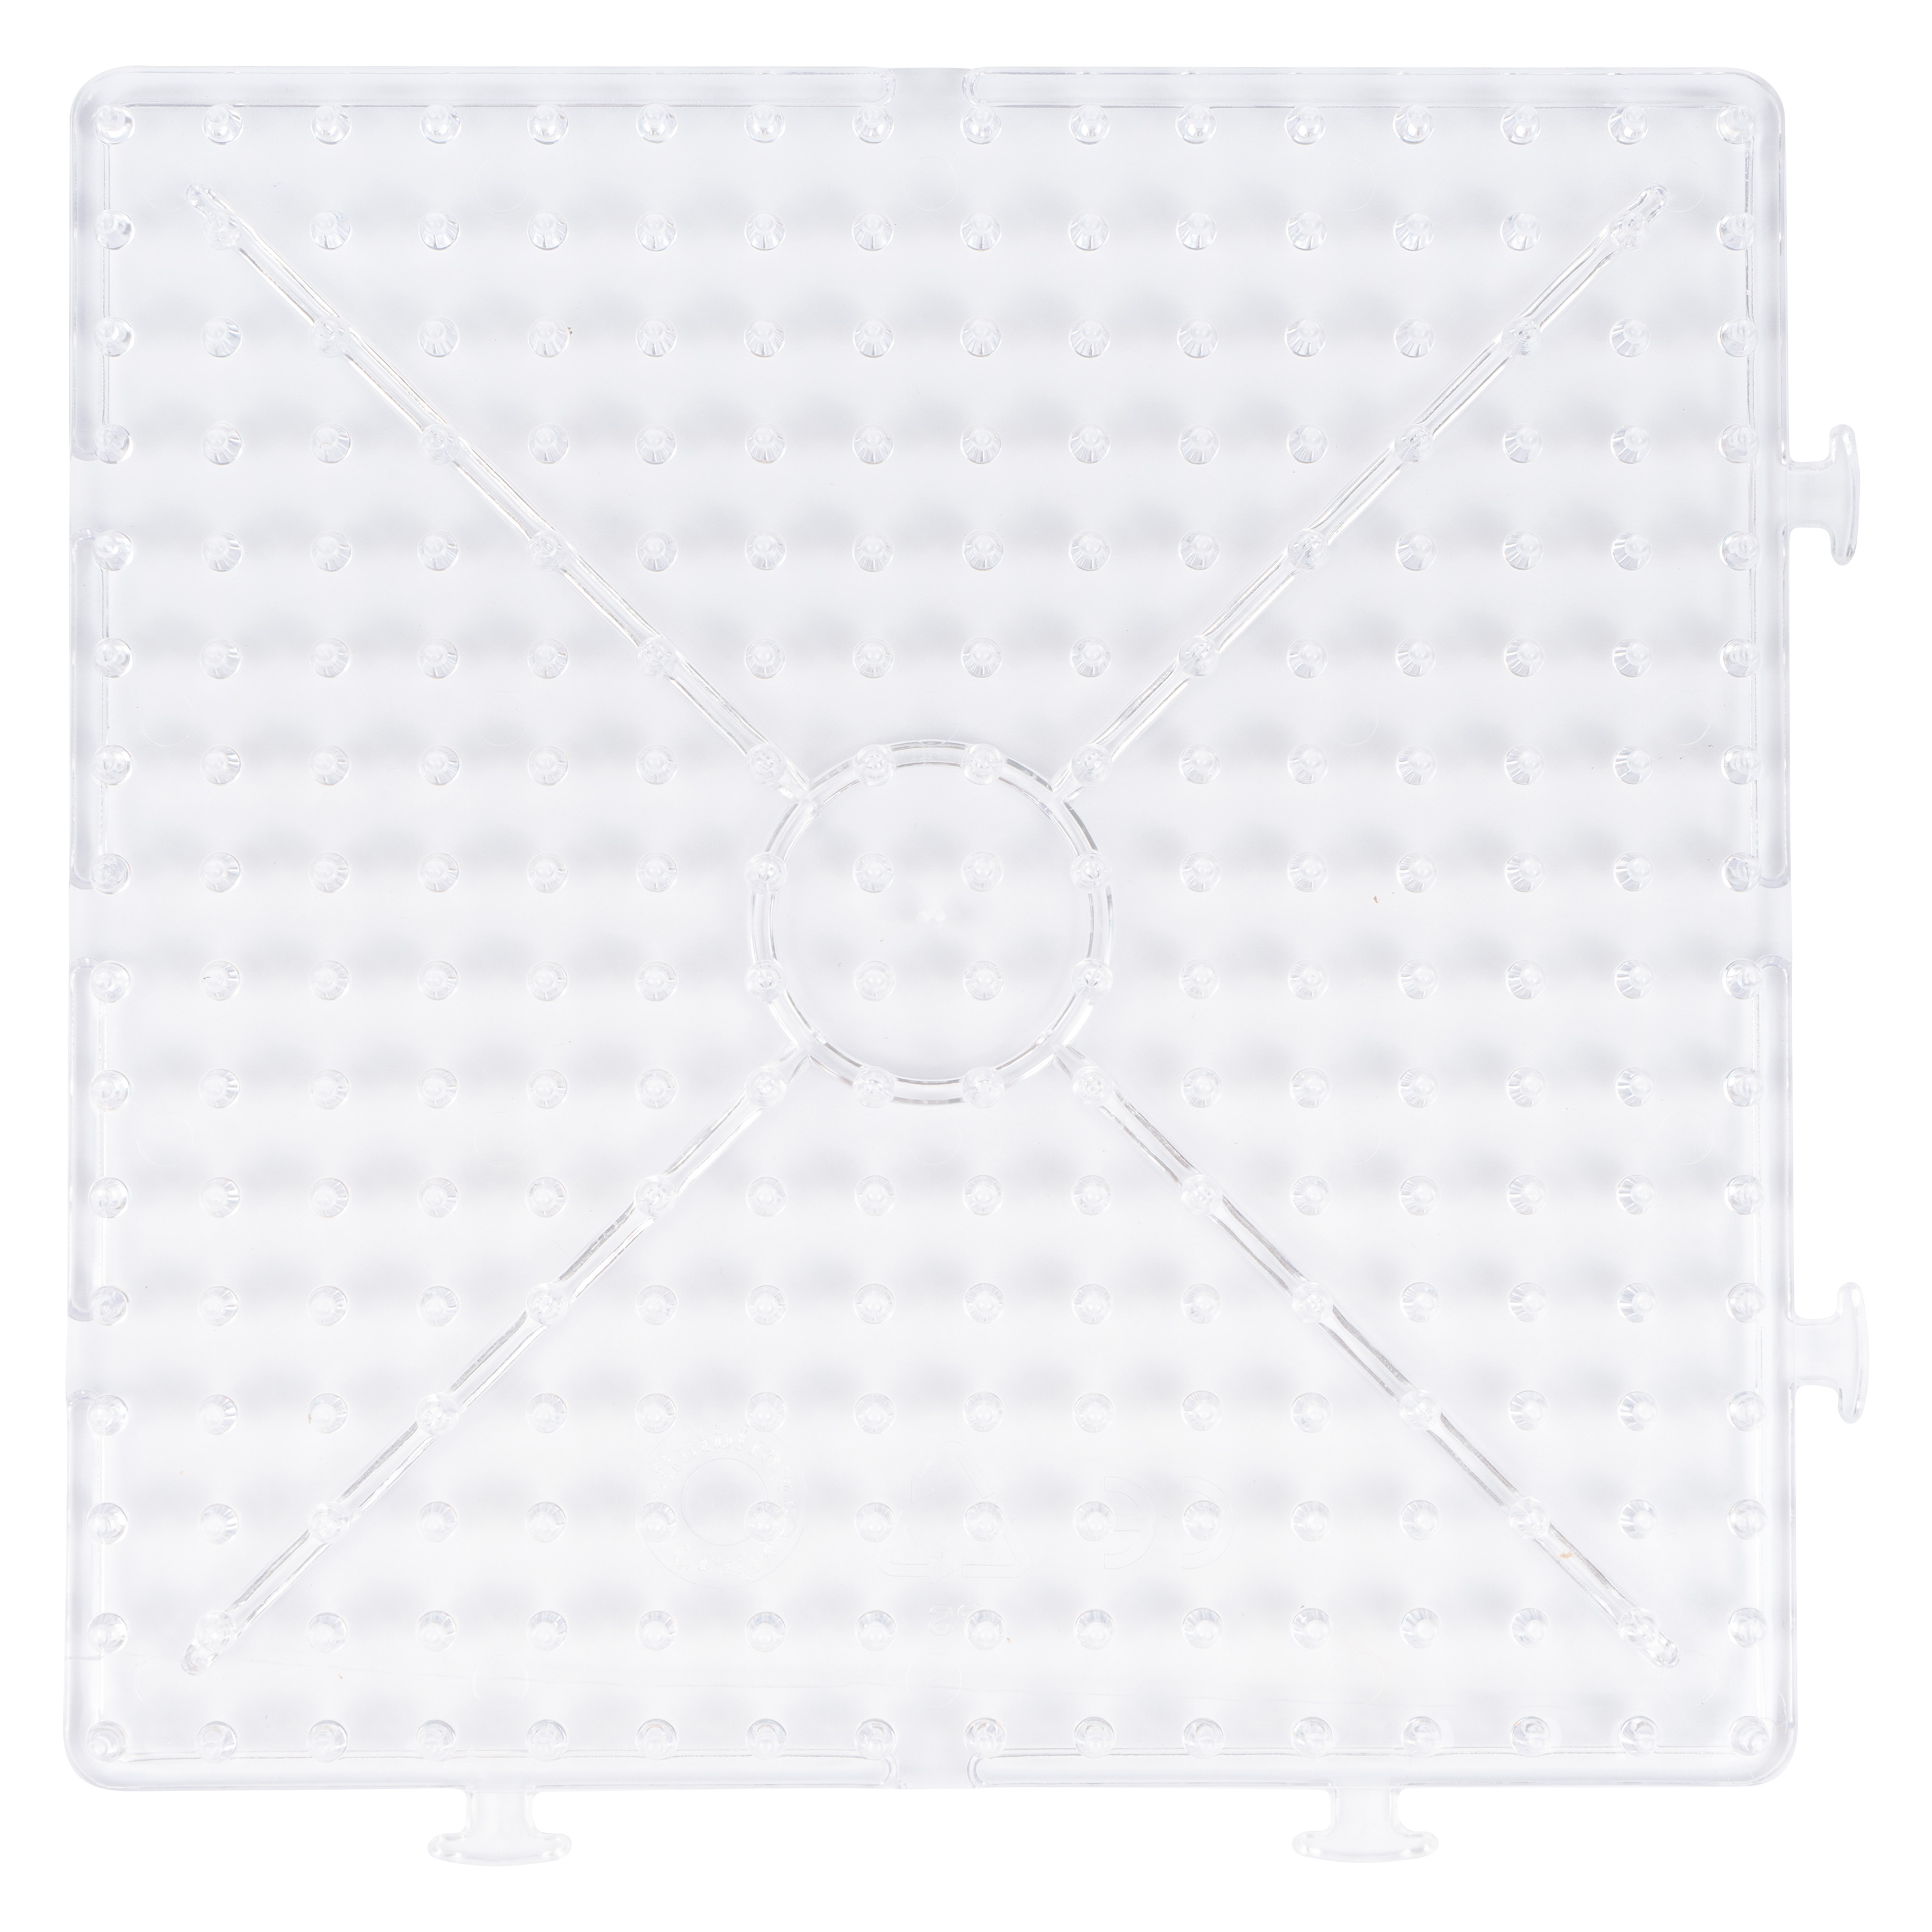 Stiftplatte transparent für XL-Perlen, 15 x 15 cm